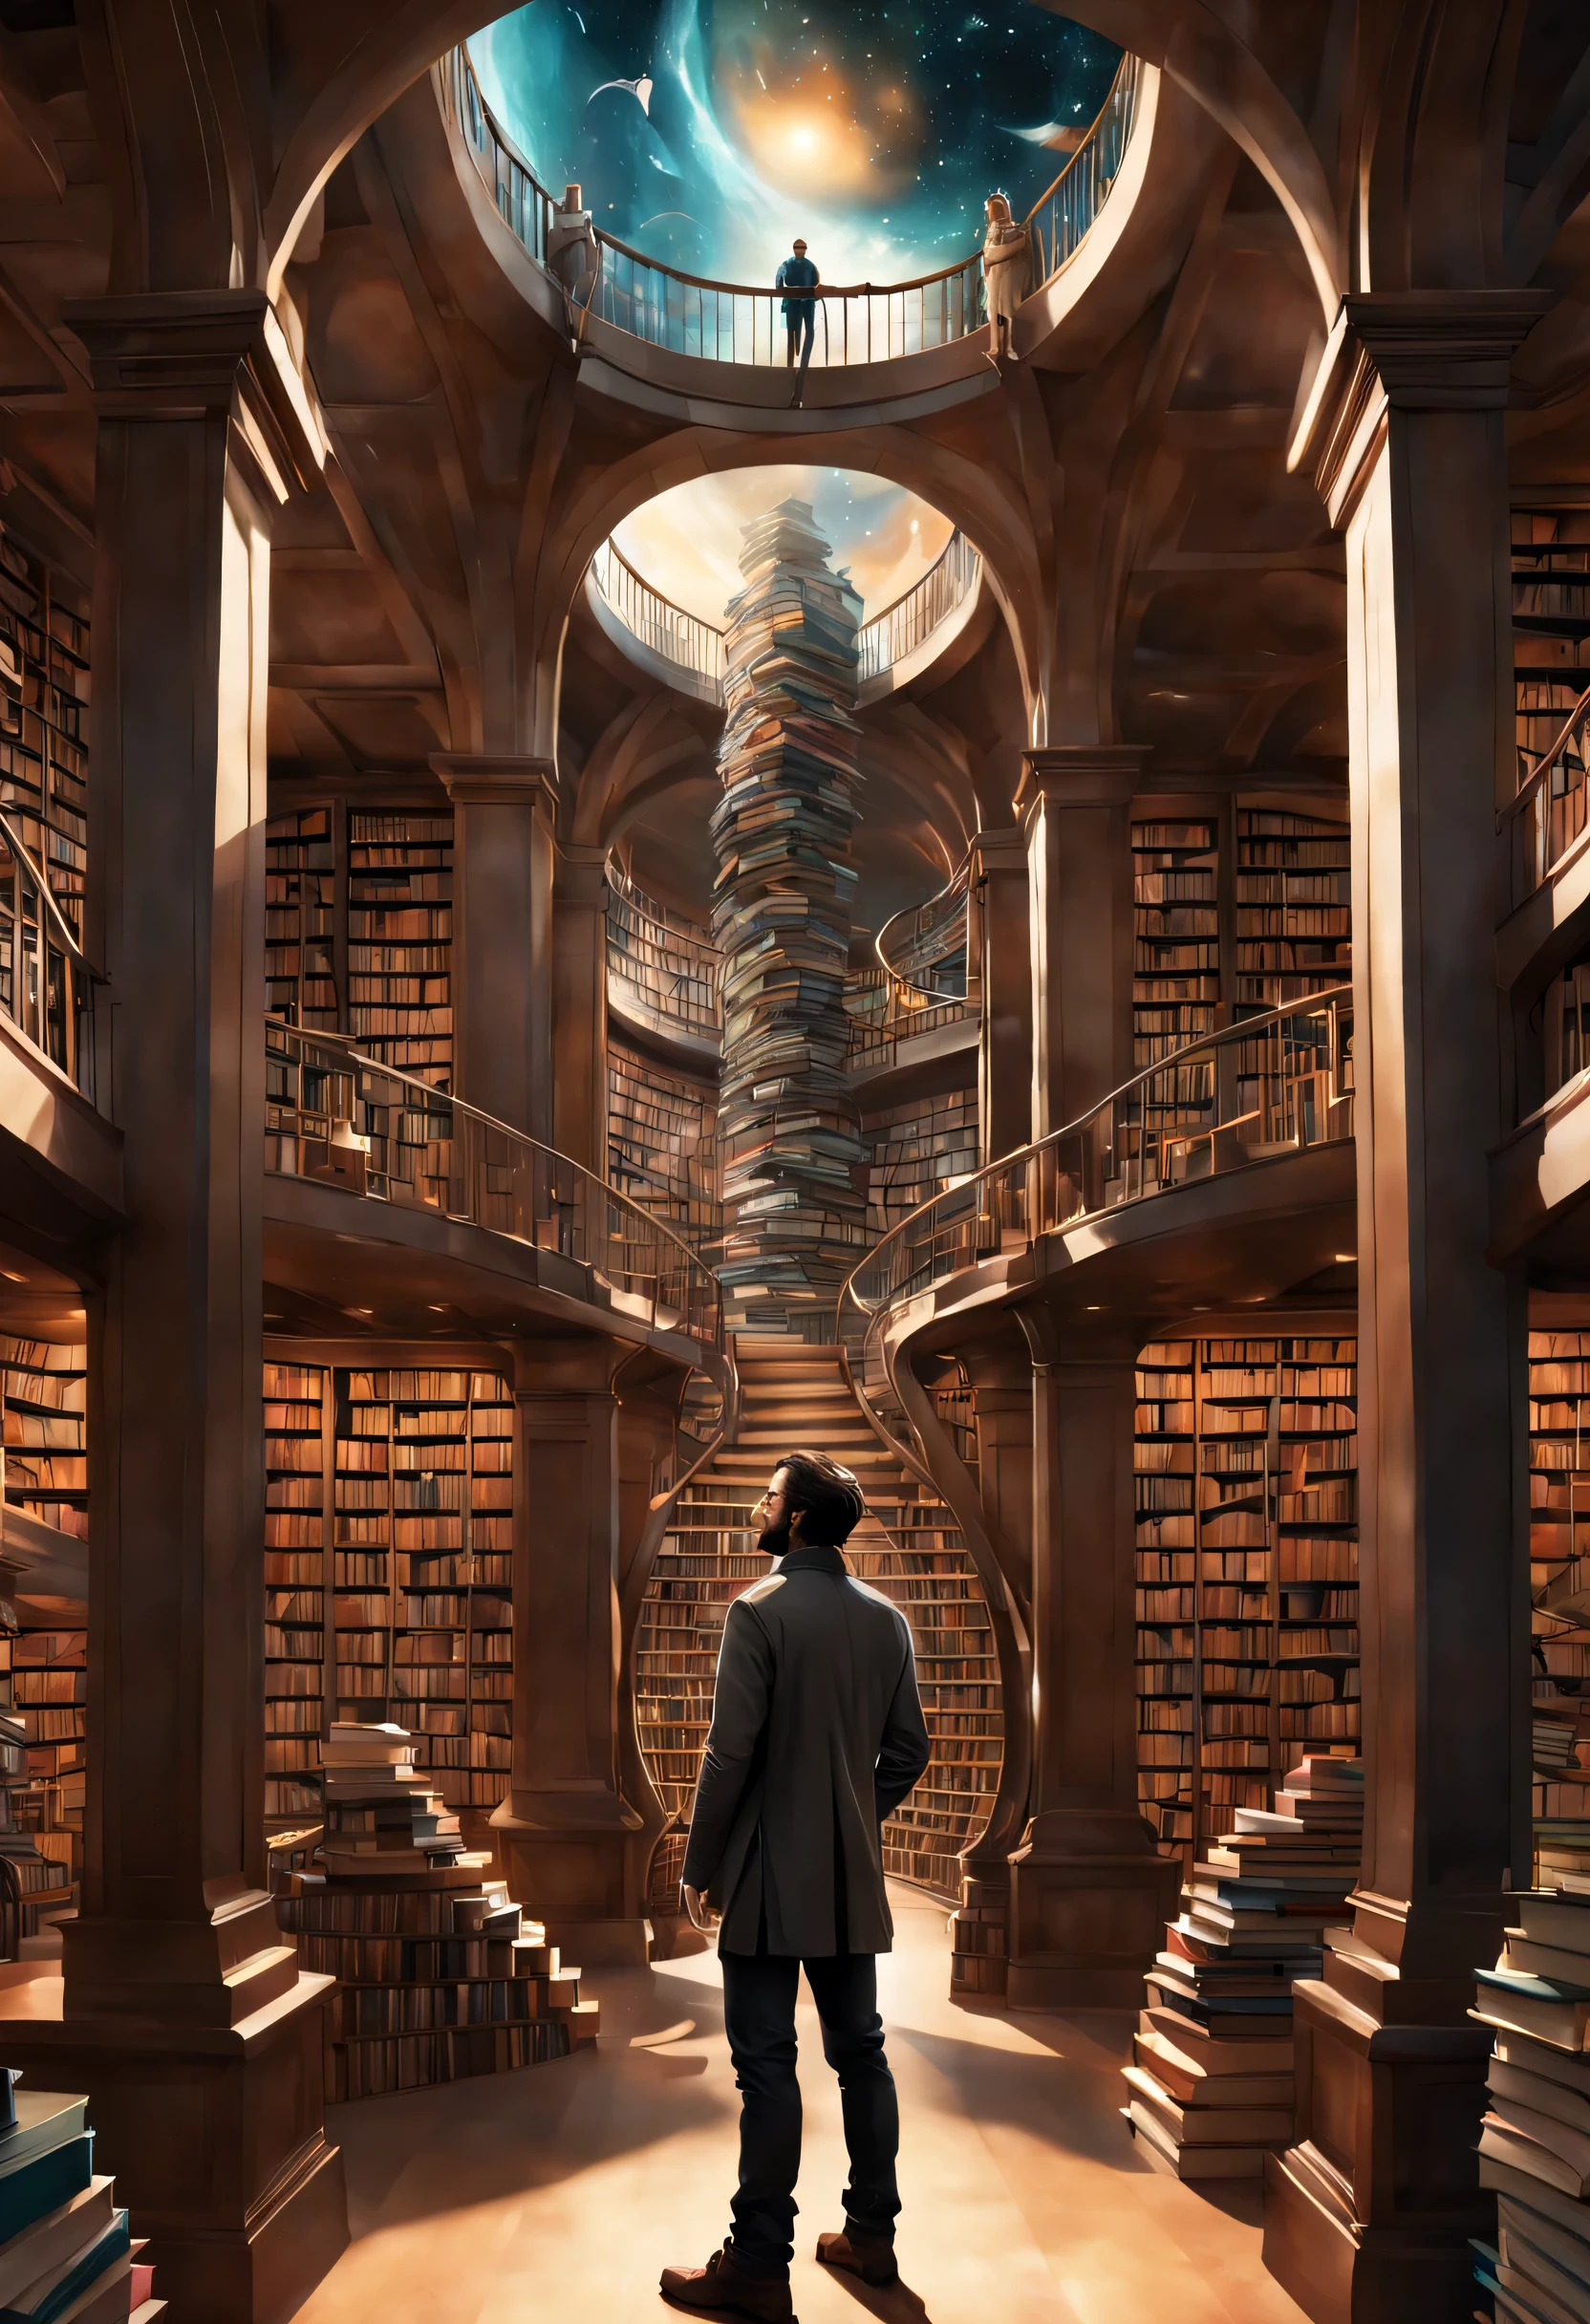 図書館で本を持って立っている男性の画像, 無限の本, ボーンスペースライブラリアートワーク, 本の洞窟, ファンタジー本のイラスト, 本が詰まった螺旋状の棚, 無限の天体図書館, 永遠の図書館, ゴシック叙事詩図書館のコンセプト, 魔法の図書館, 日本のSF本アート, ビープルとジャン・ジロー, そこら中に本がある
